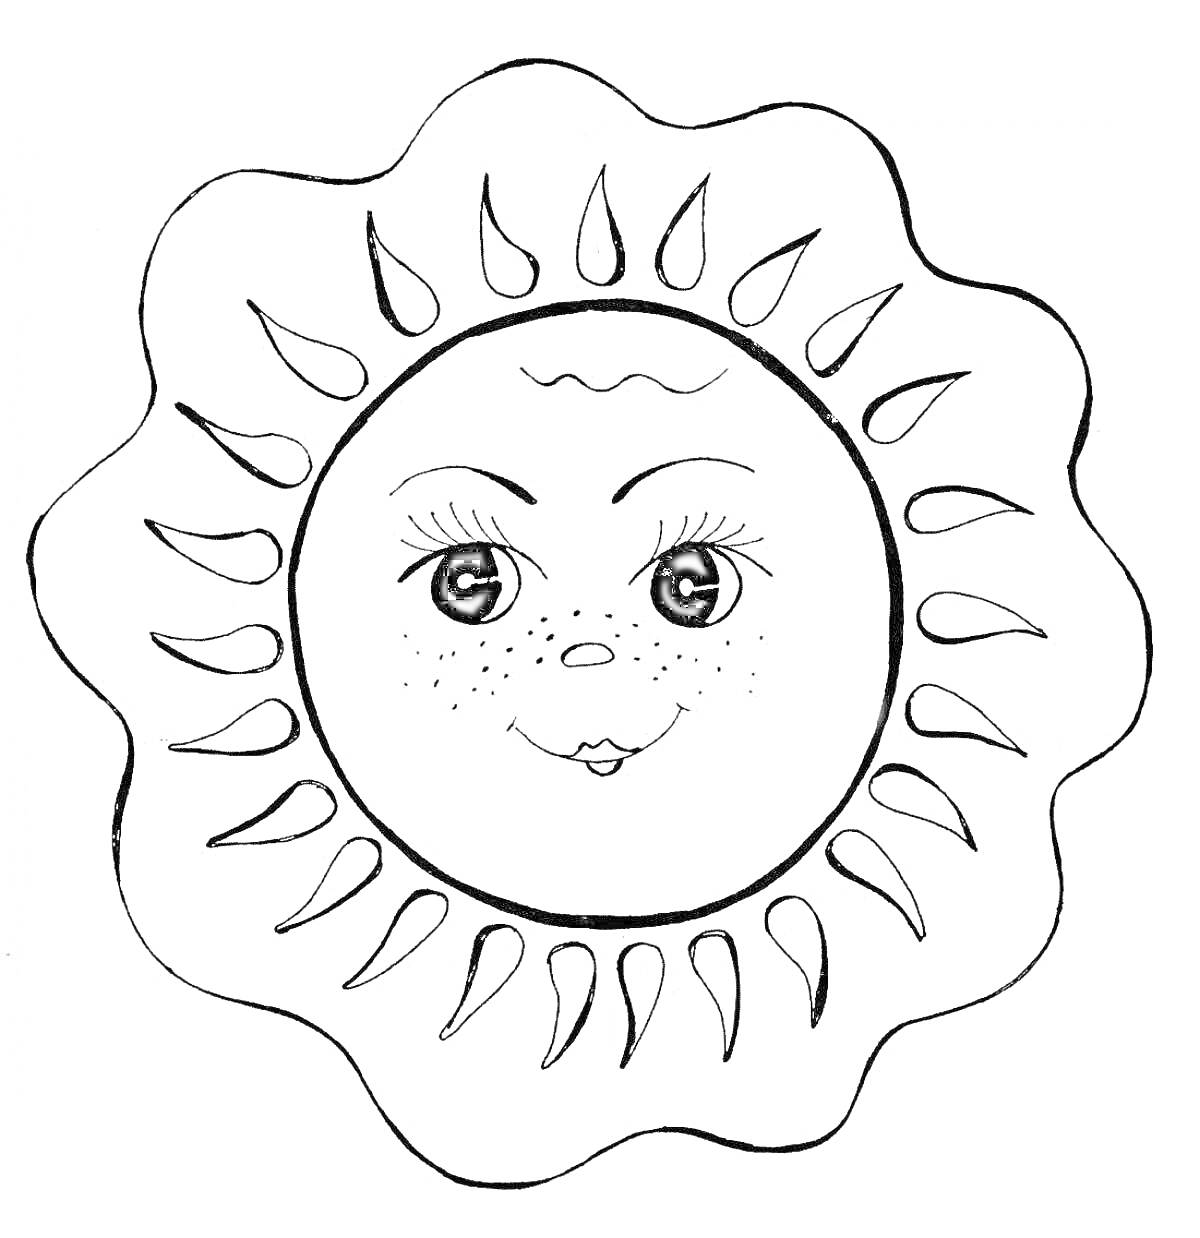 Раскраска Солнышко с лицом, ресницами и лучами